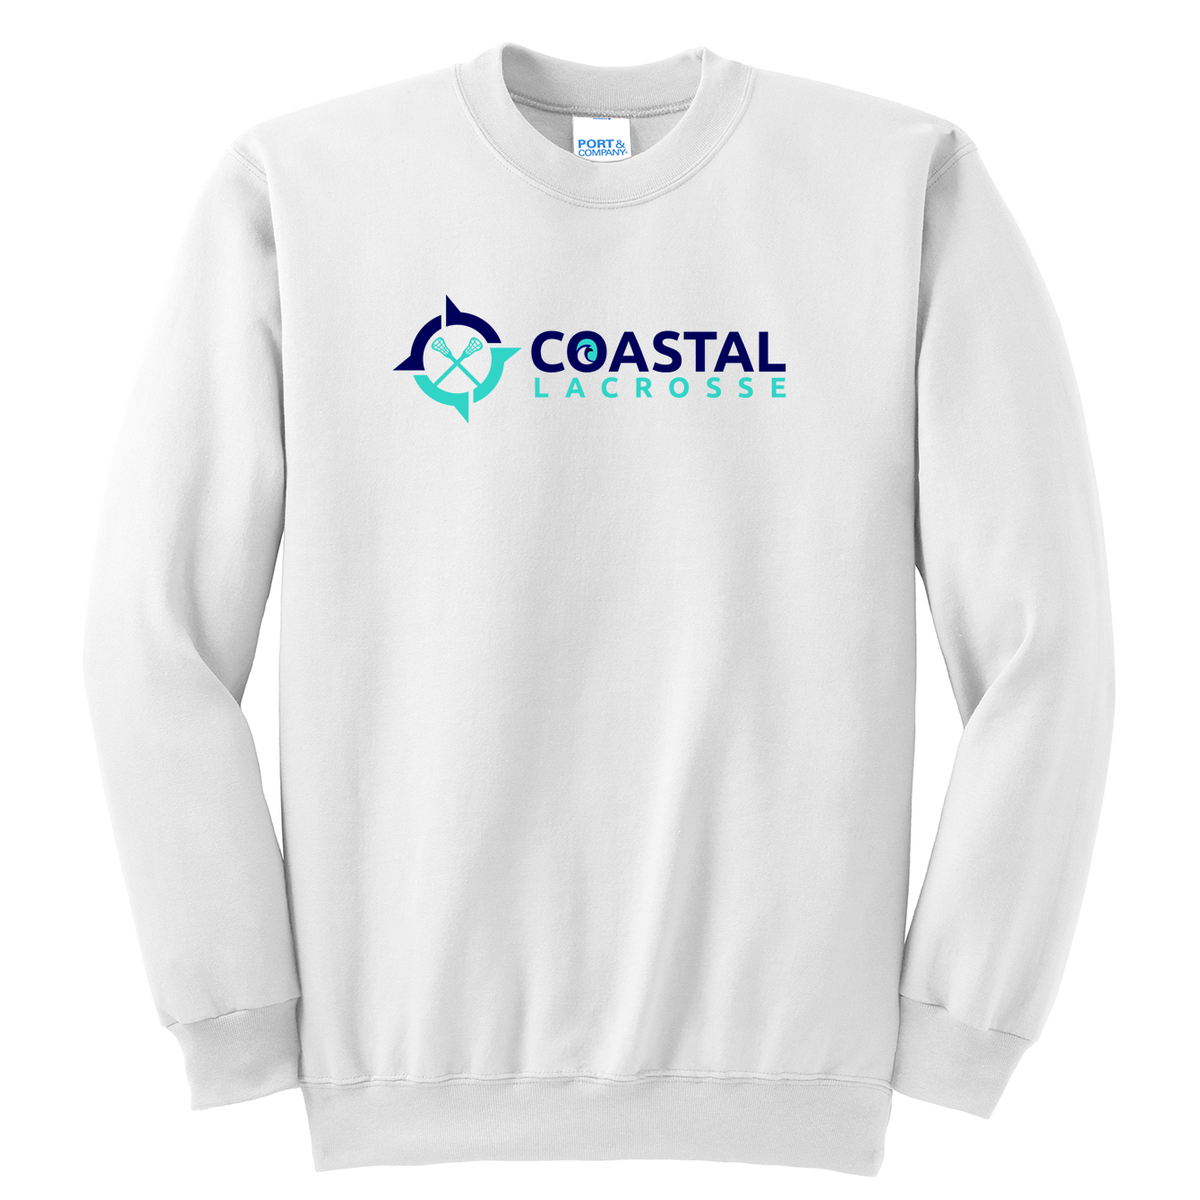 Coastal Lacrosse Crew Neck Sweater